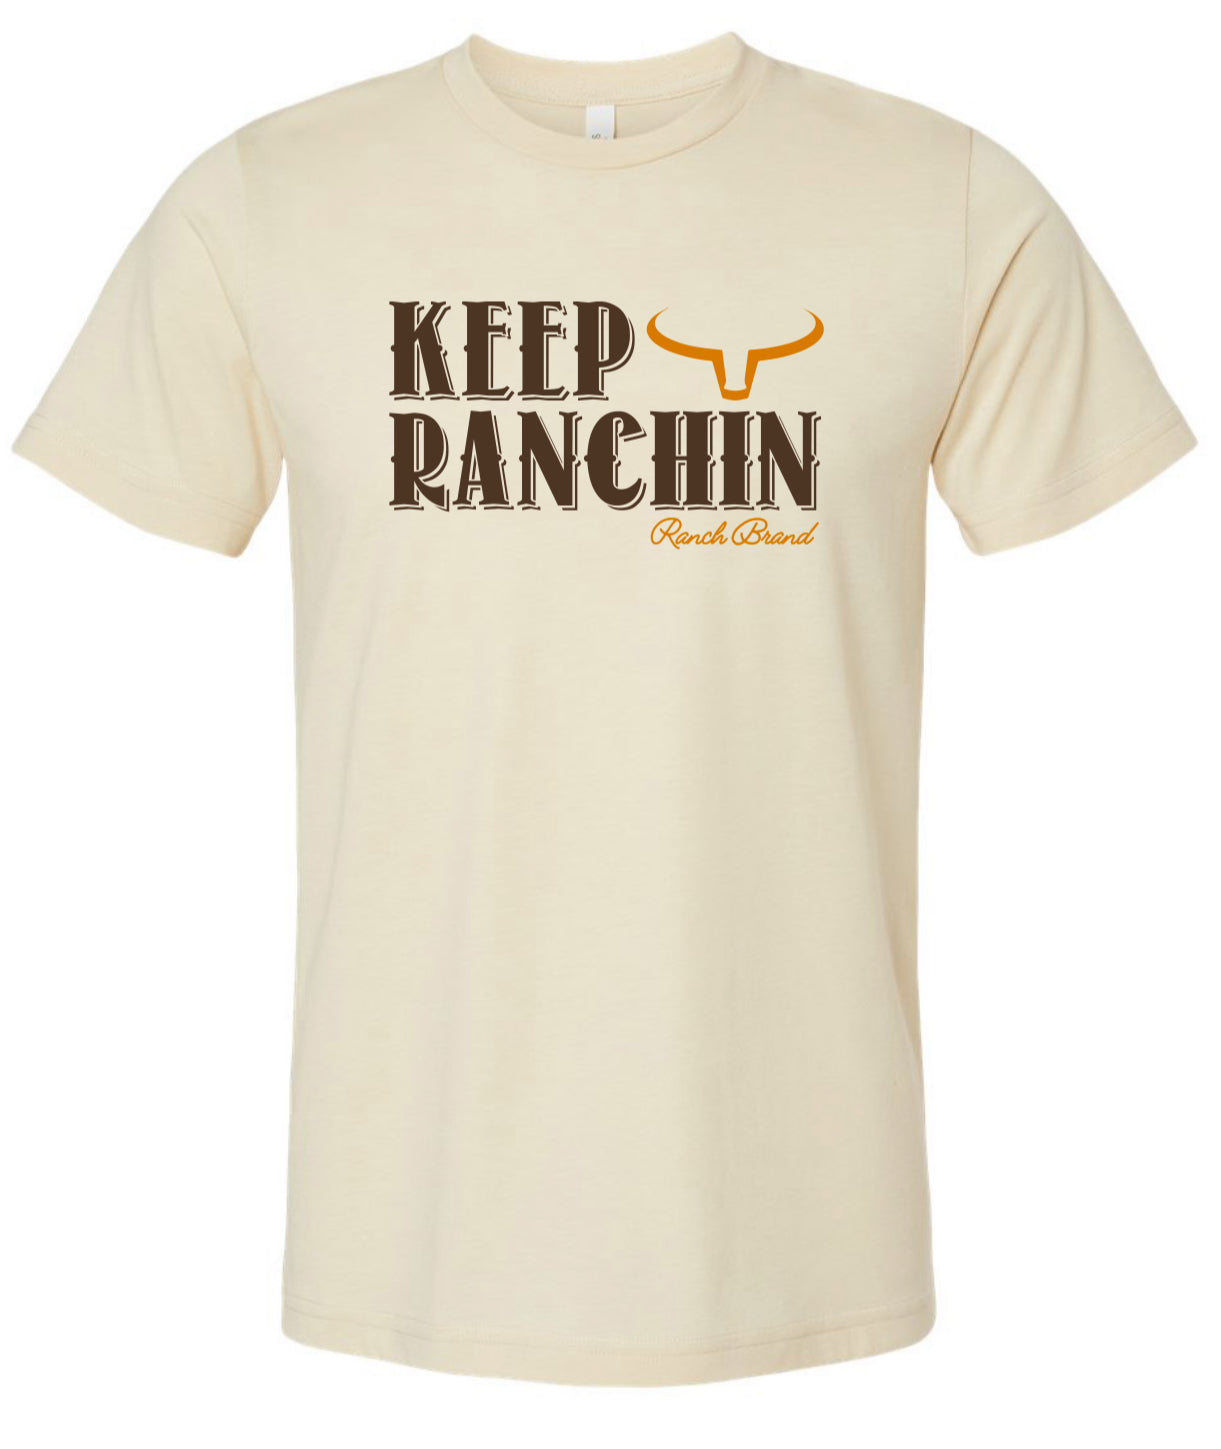 Ranch Brand | Keep Ranchin | Tan &amp; Brun